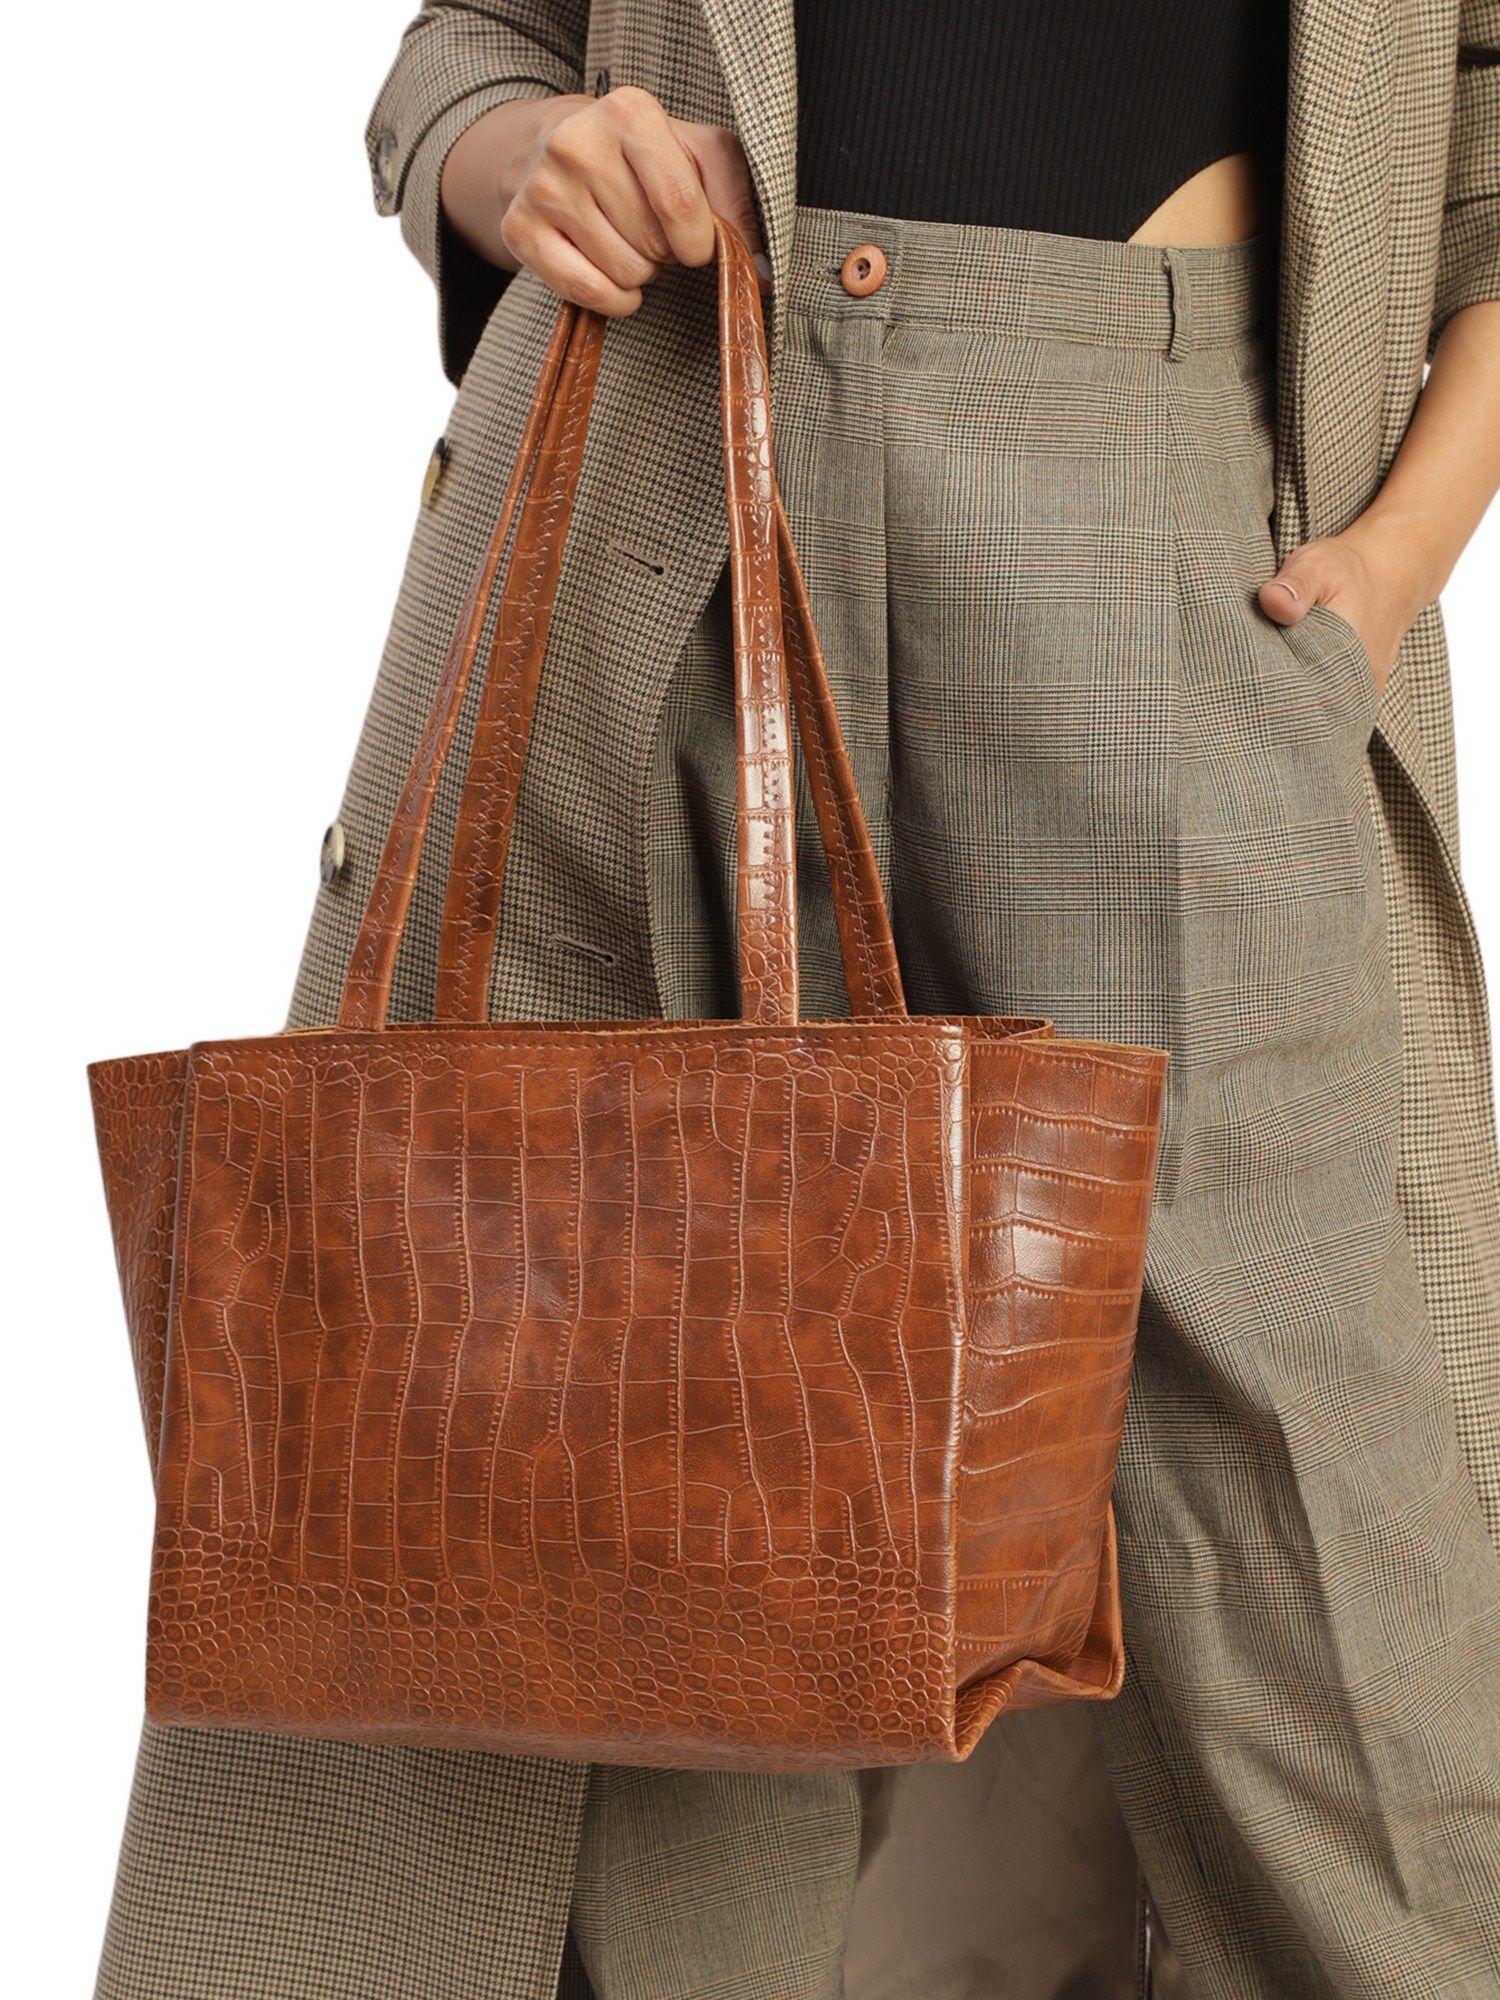 women's-brown-tote-bag